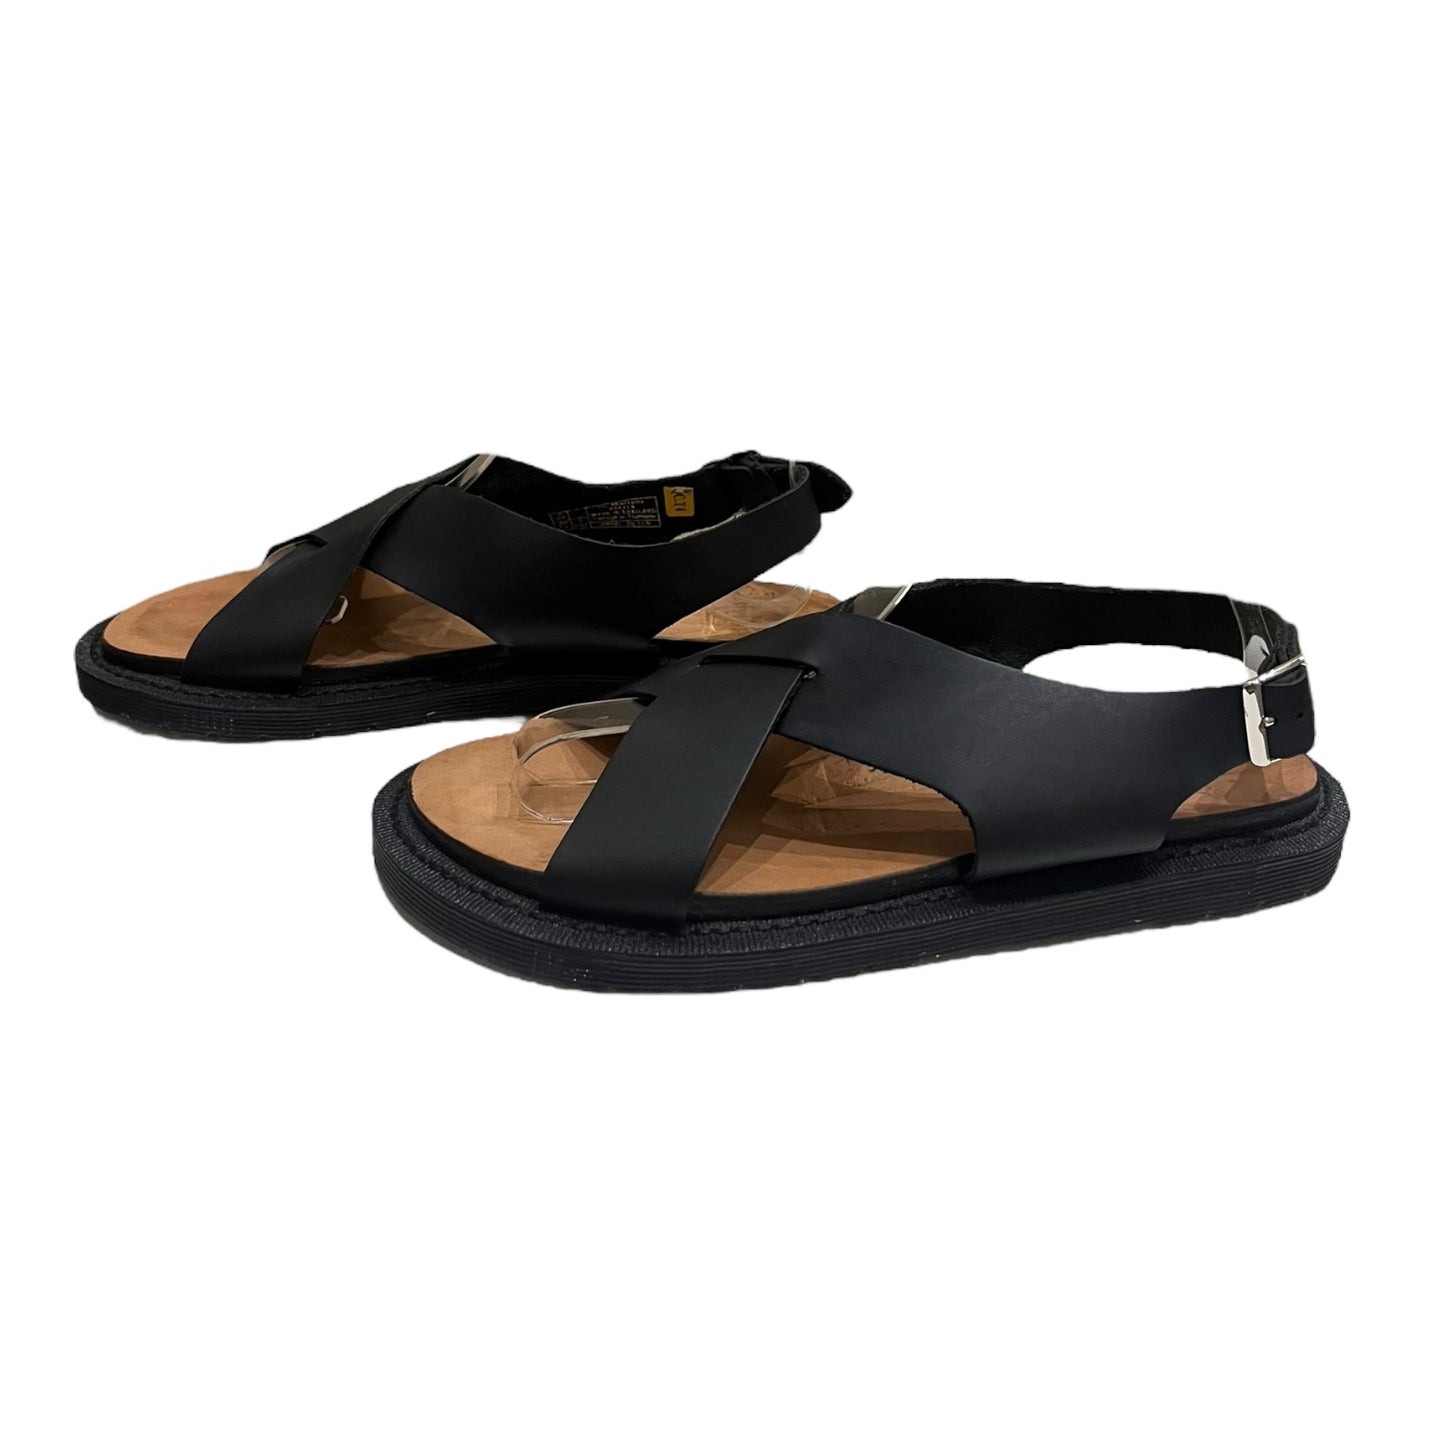 Dr Martens Black Sandals - 5